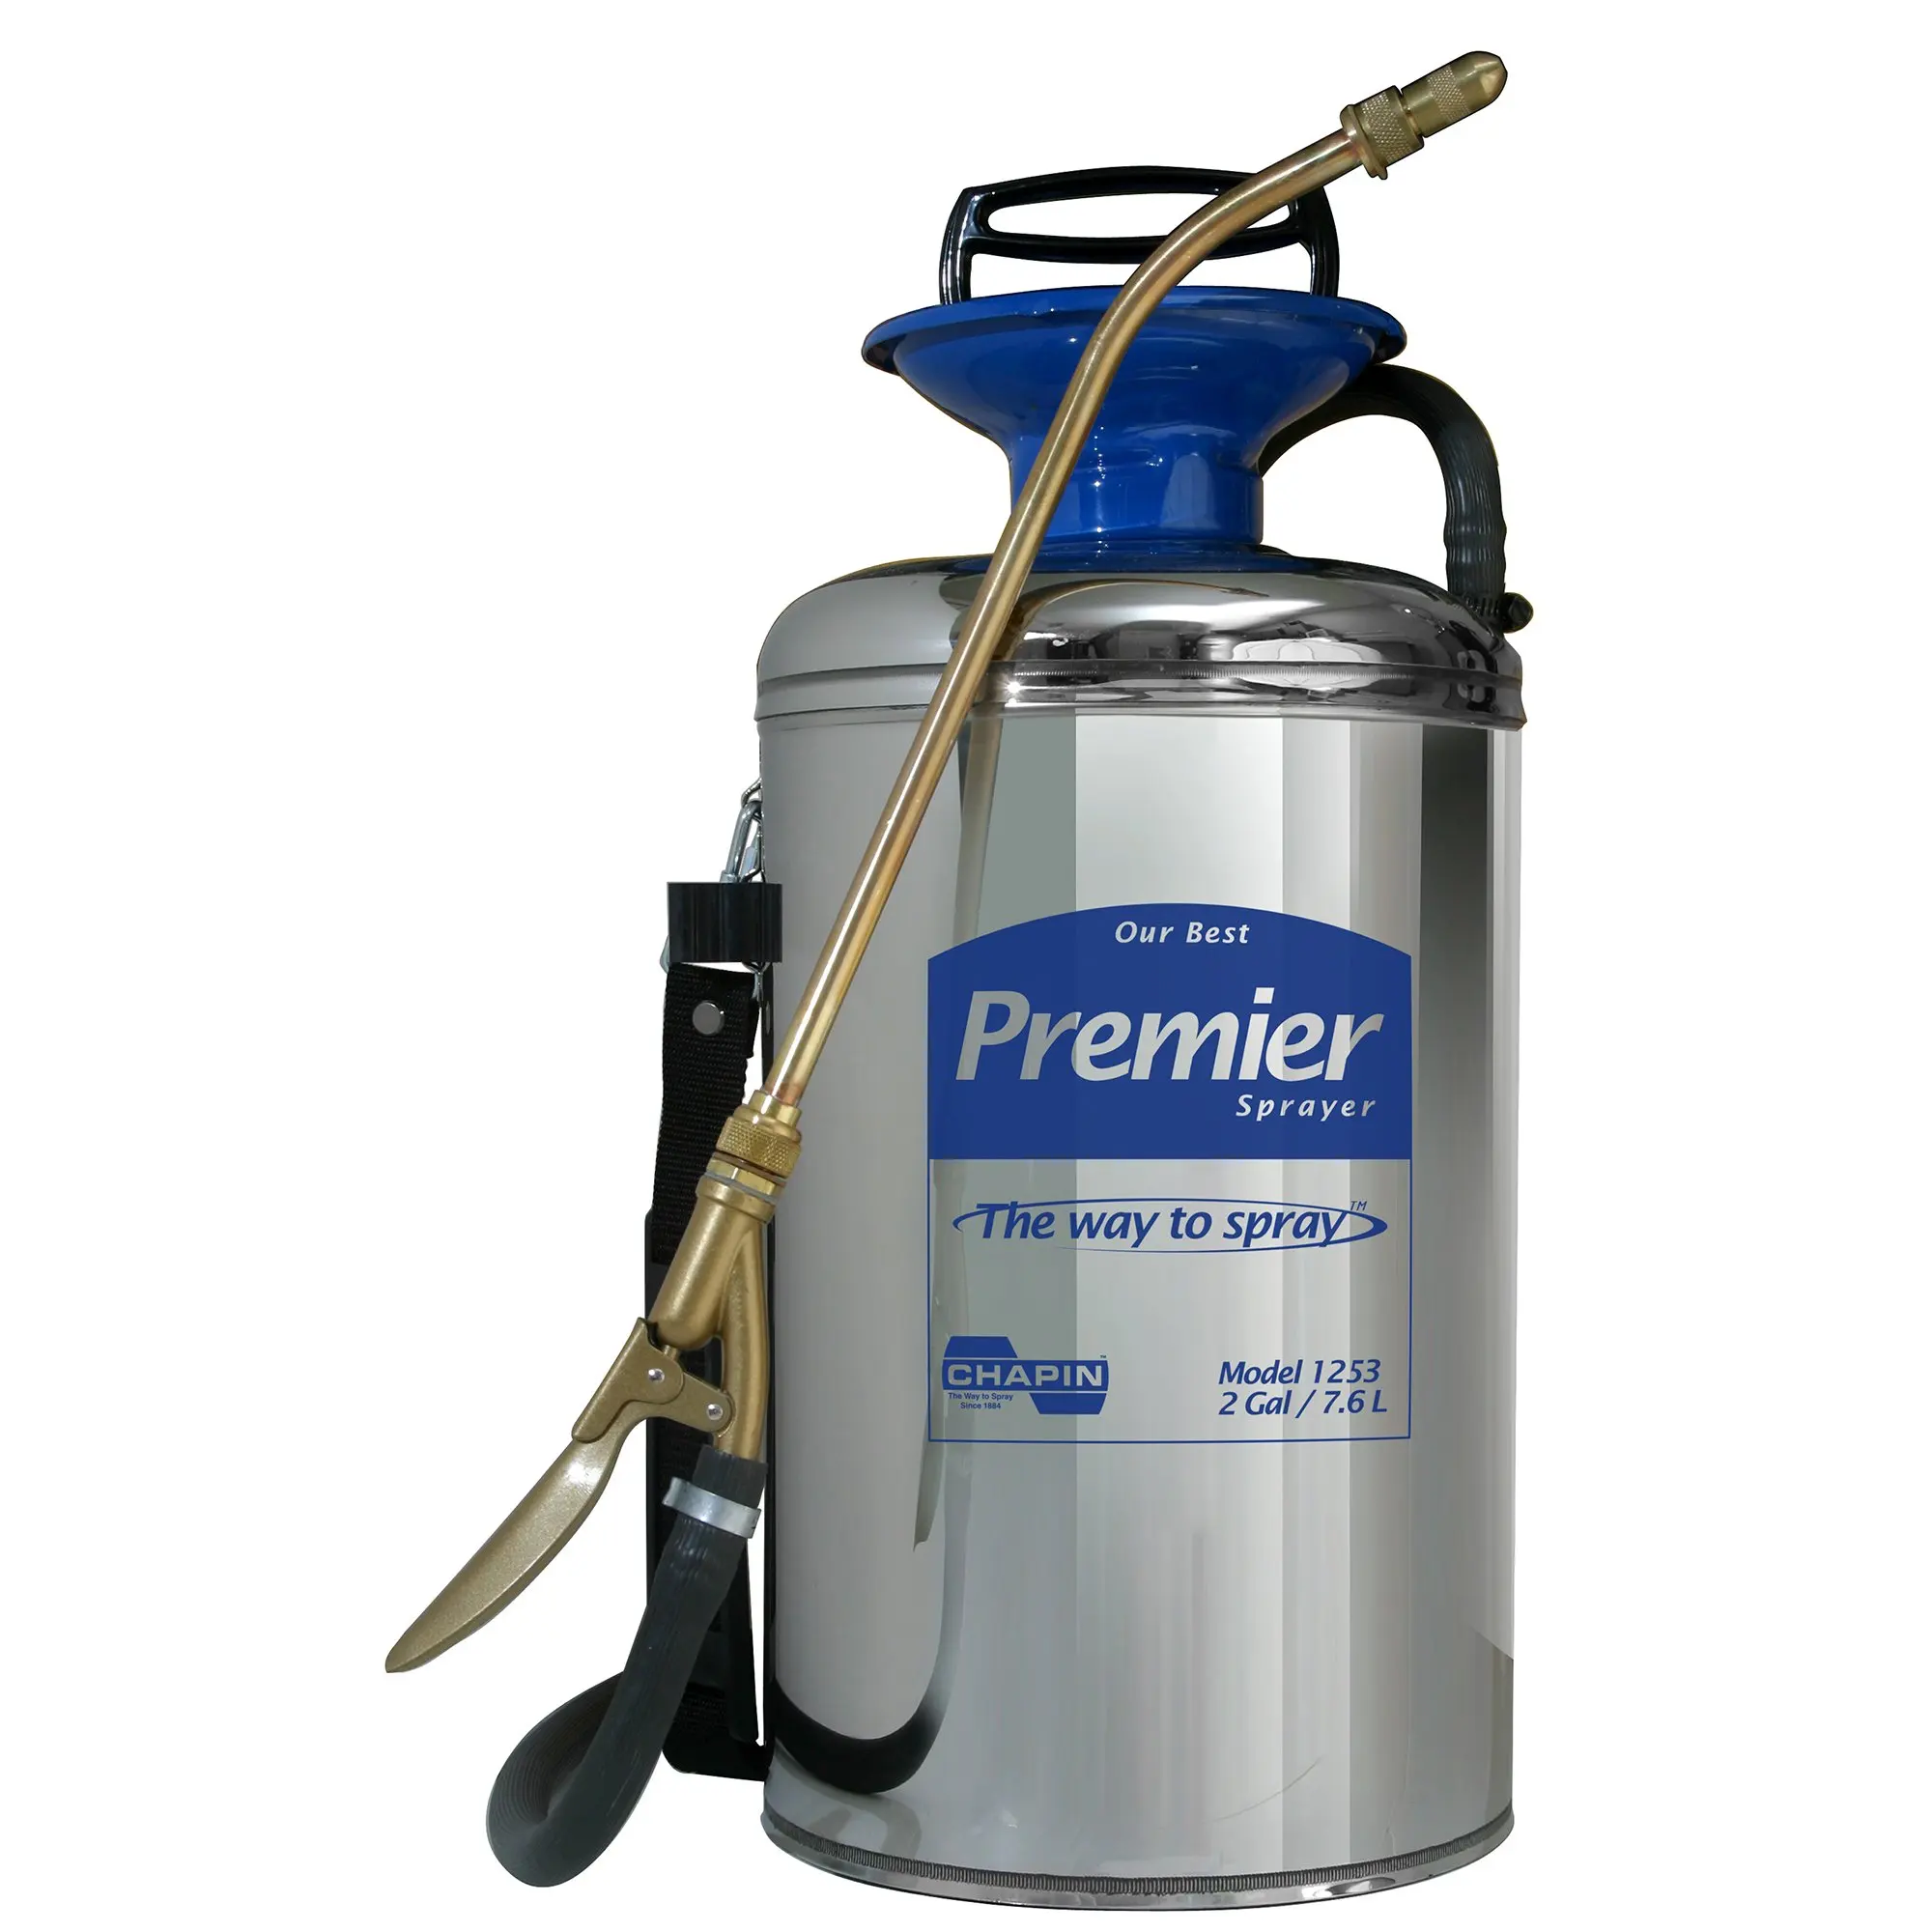 2-Gallon Premier Series Pro Stainless Steel Sprayer For Fertilizer, Herbici...